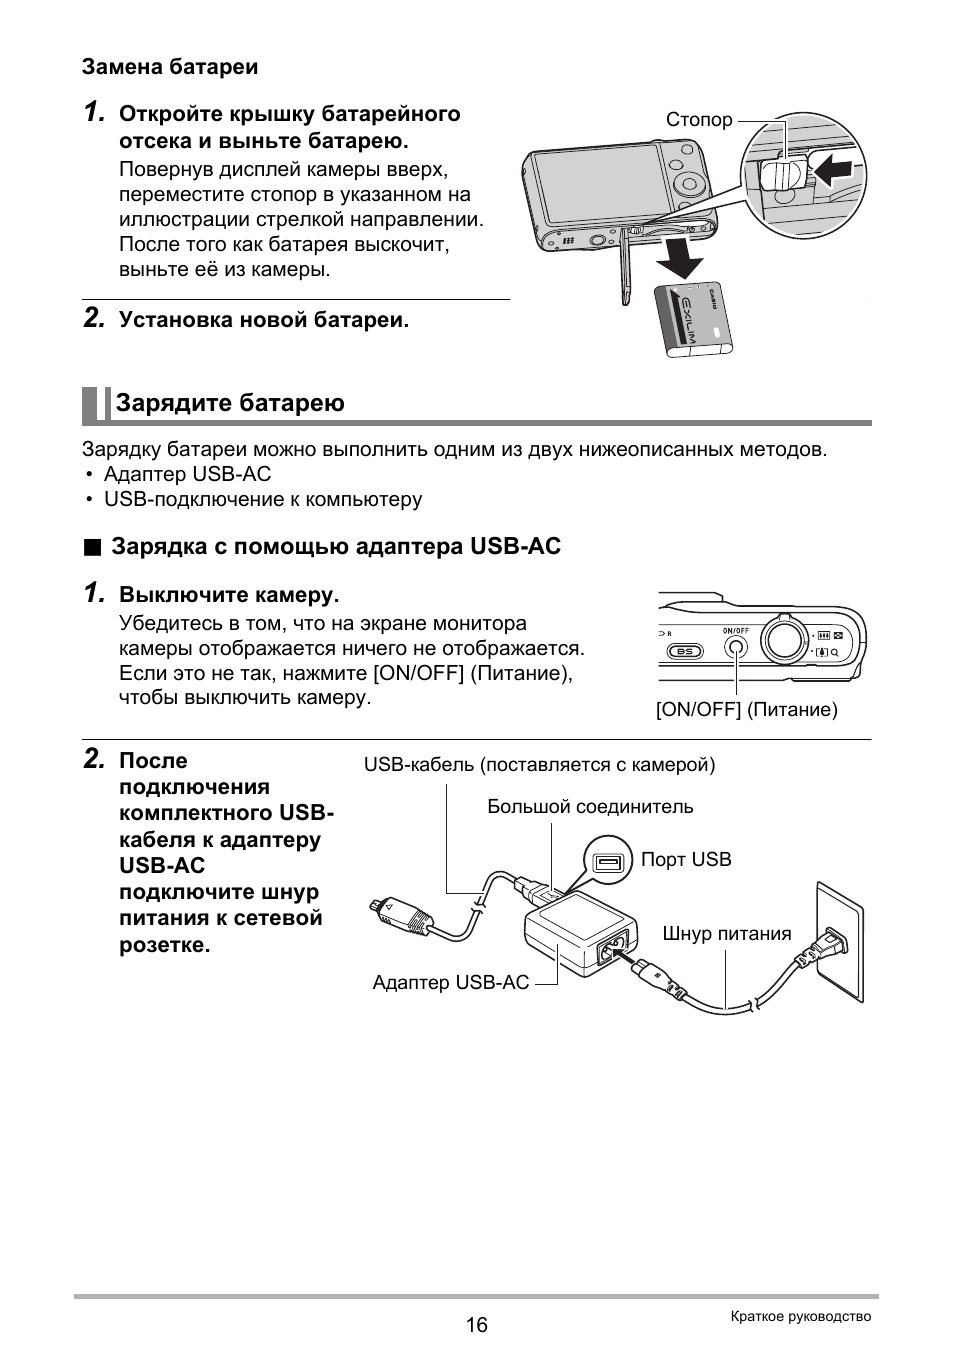 Зарядите батарею | Инструкция по эксплуатации Casio EX-ZR20 | Страница 16 / 197